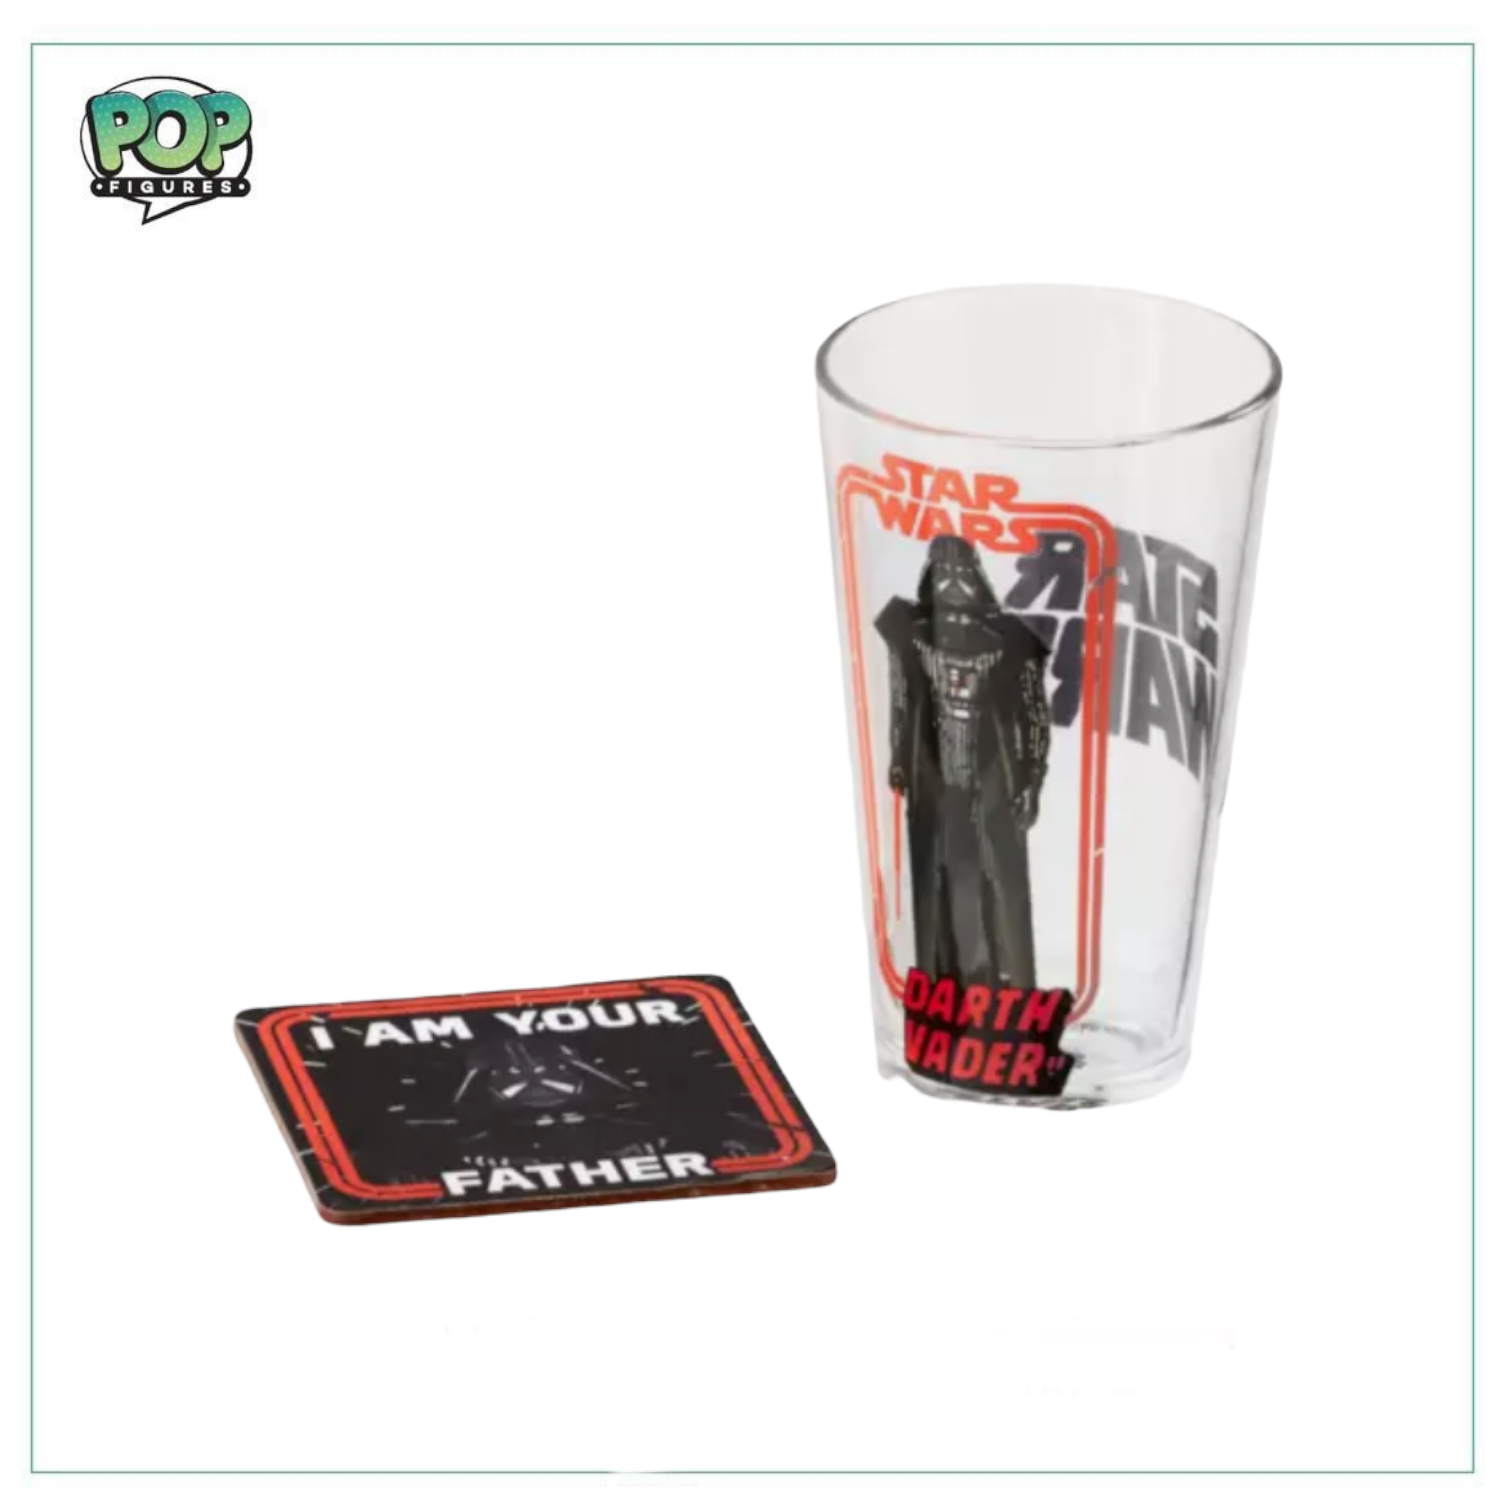 Star Wars Pint Glass and Coaster Set! Star Wars - Darth Vader